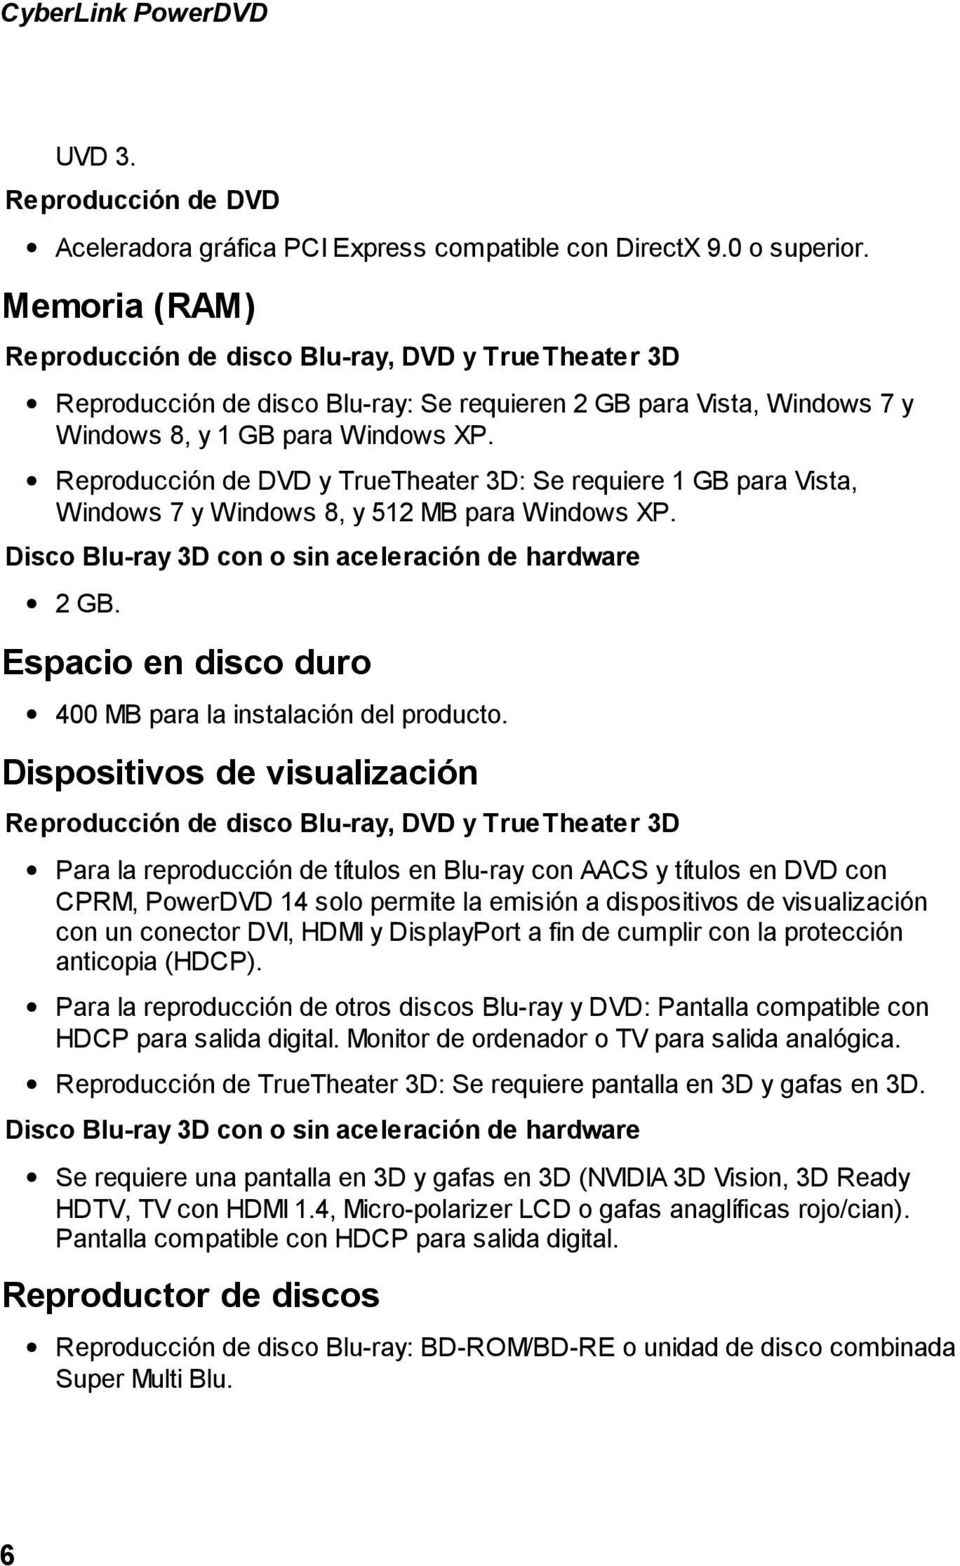 Reproducción de DVD y TrueTheater 3D: Se requiere 1 GB para Vista, Windows 7 y Windows 8, y 512 MB para Windows XP. Disco Blu-ray 3D con o sin aceleración de hardware 2 GB.